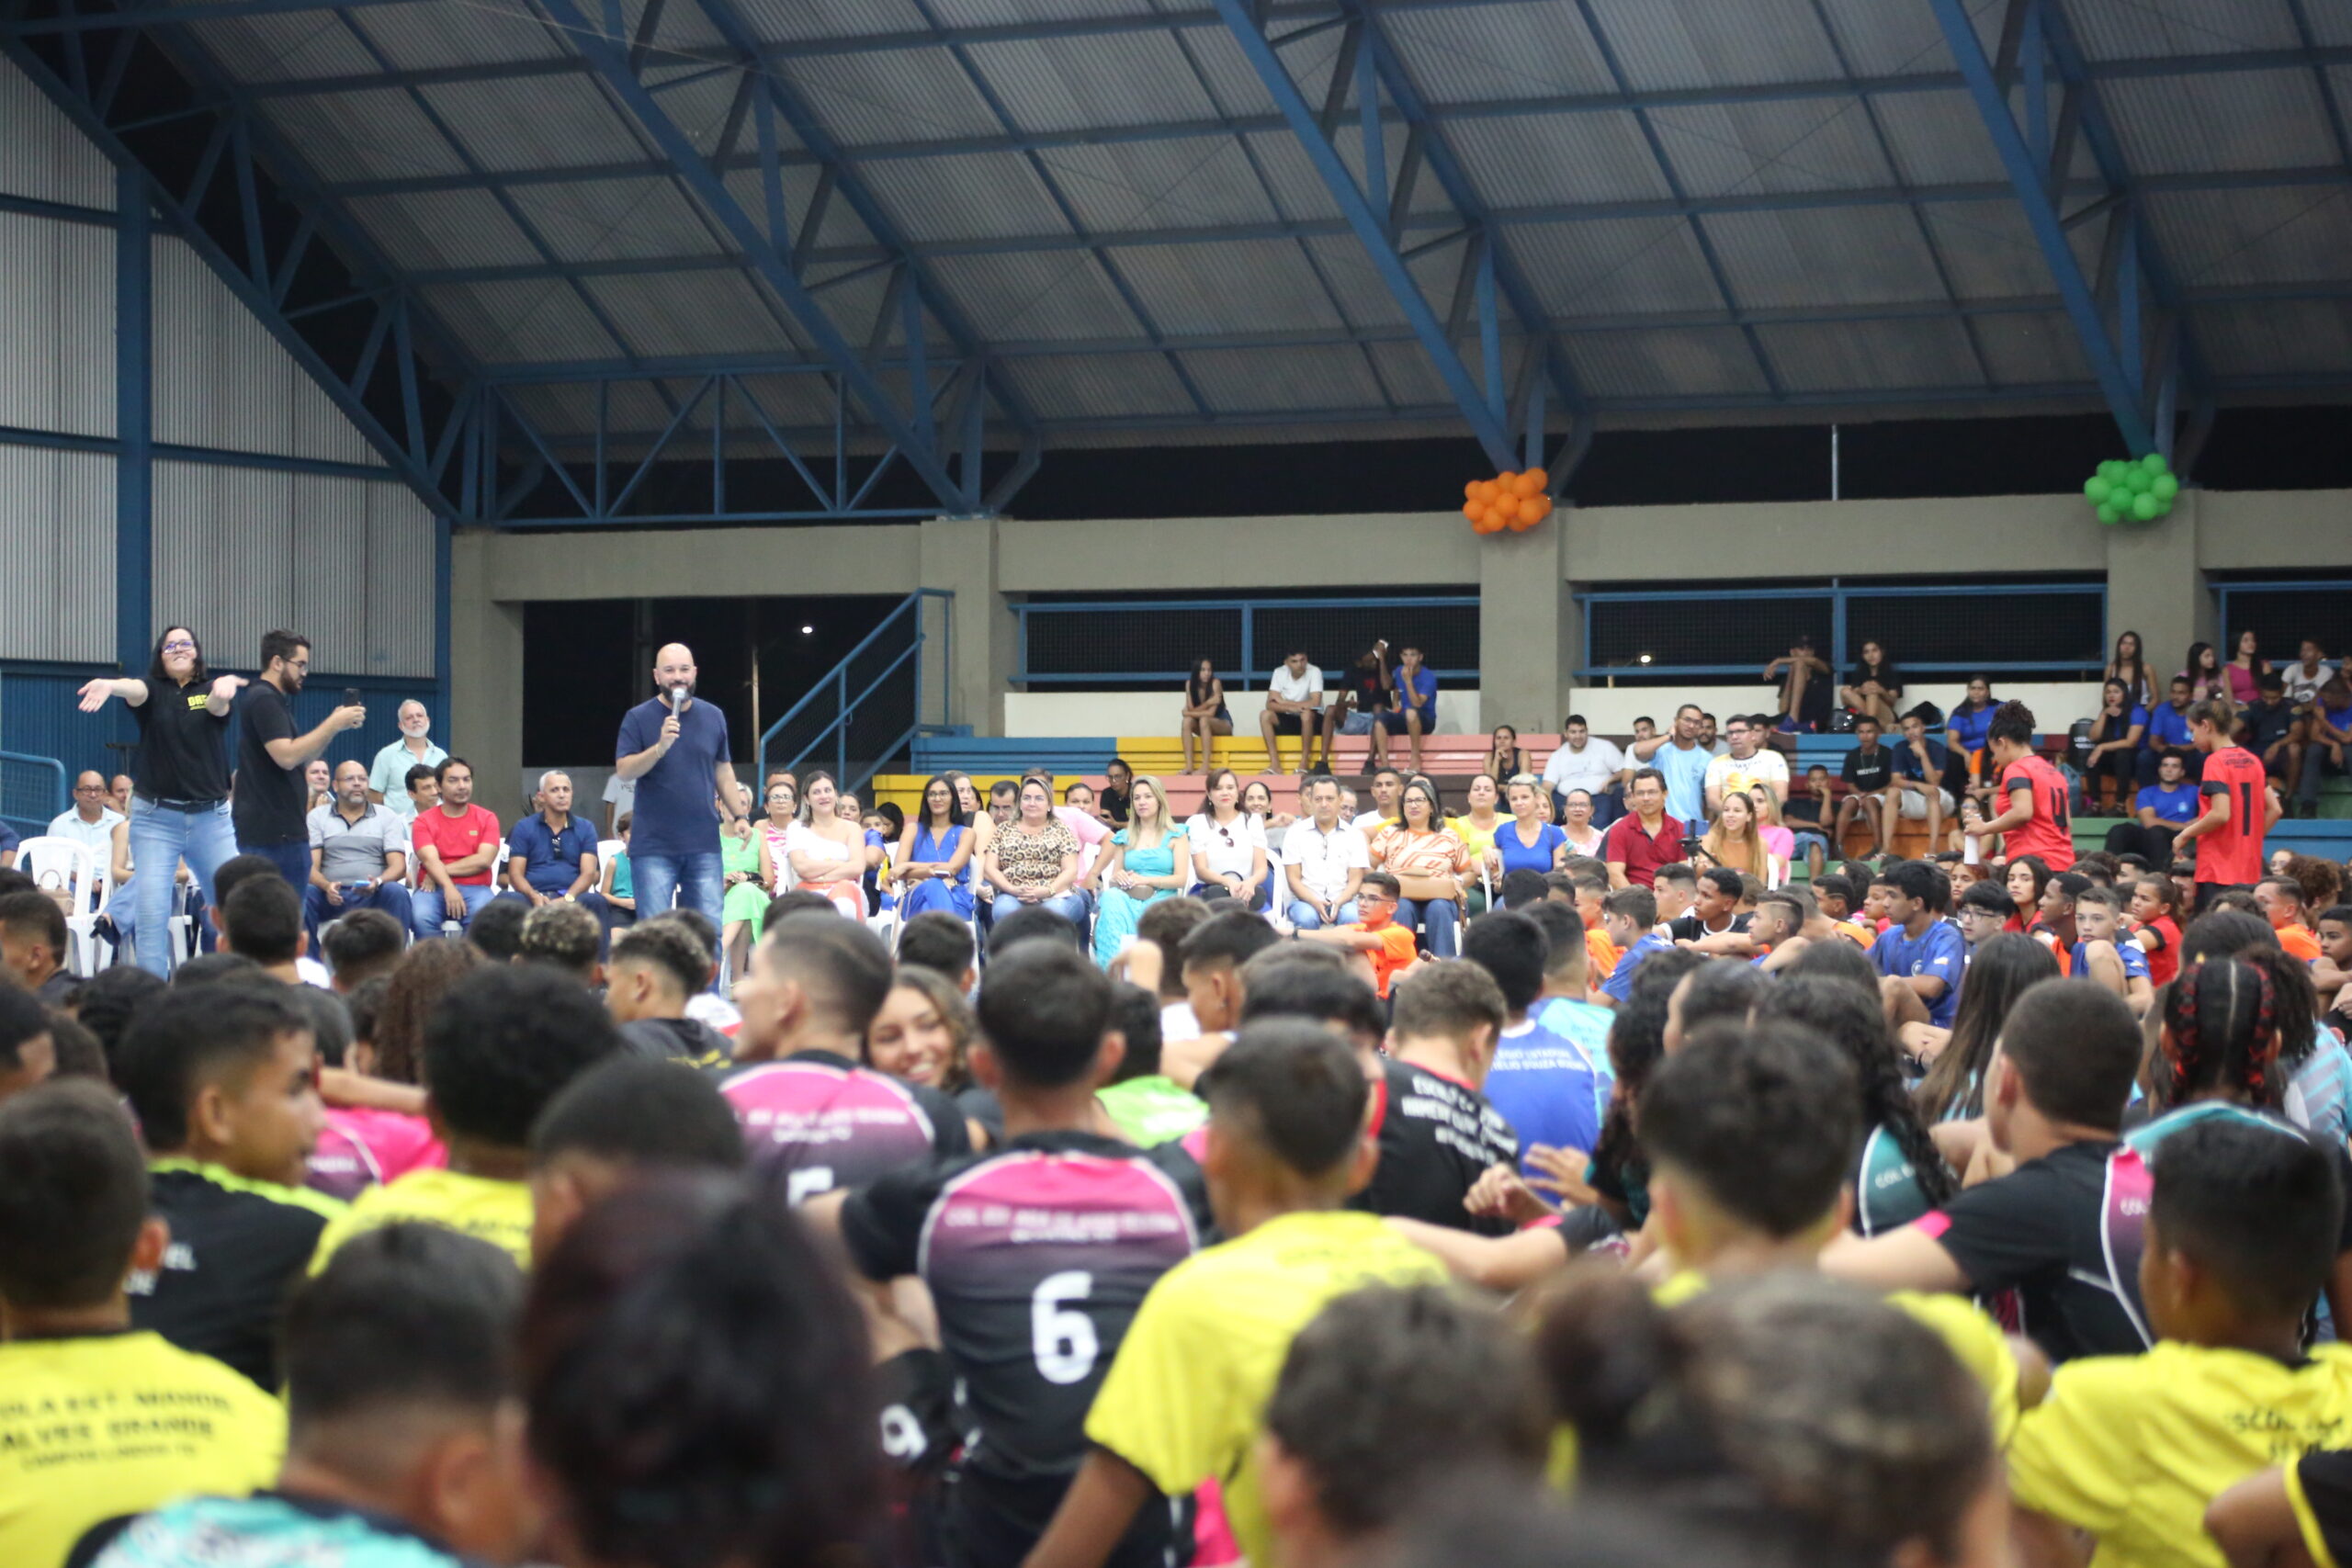 Jogos Estudantis do Tocantins regional de Araguaína tem abertura realizada e conta com mais de 800 estudantes-atletas da região norte do Estado